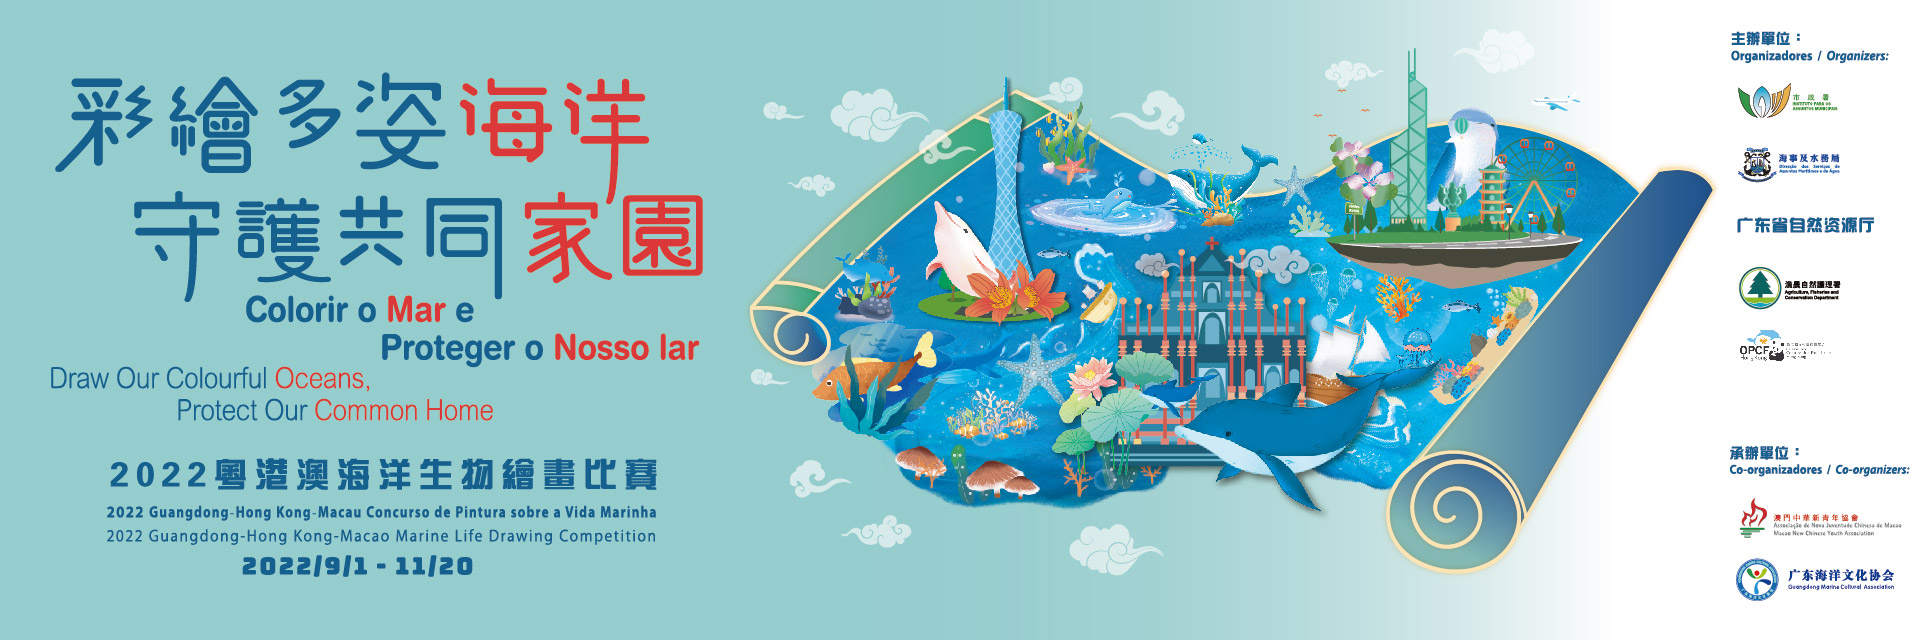 粵港澳海洋生物繪畫比賽2022現正接受交件